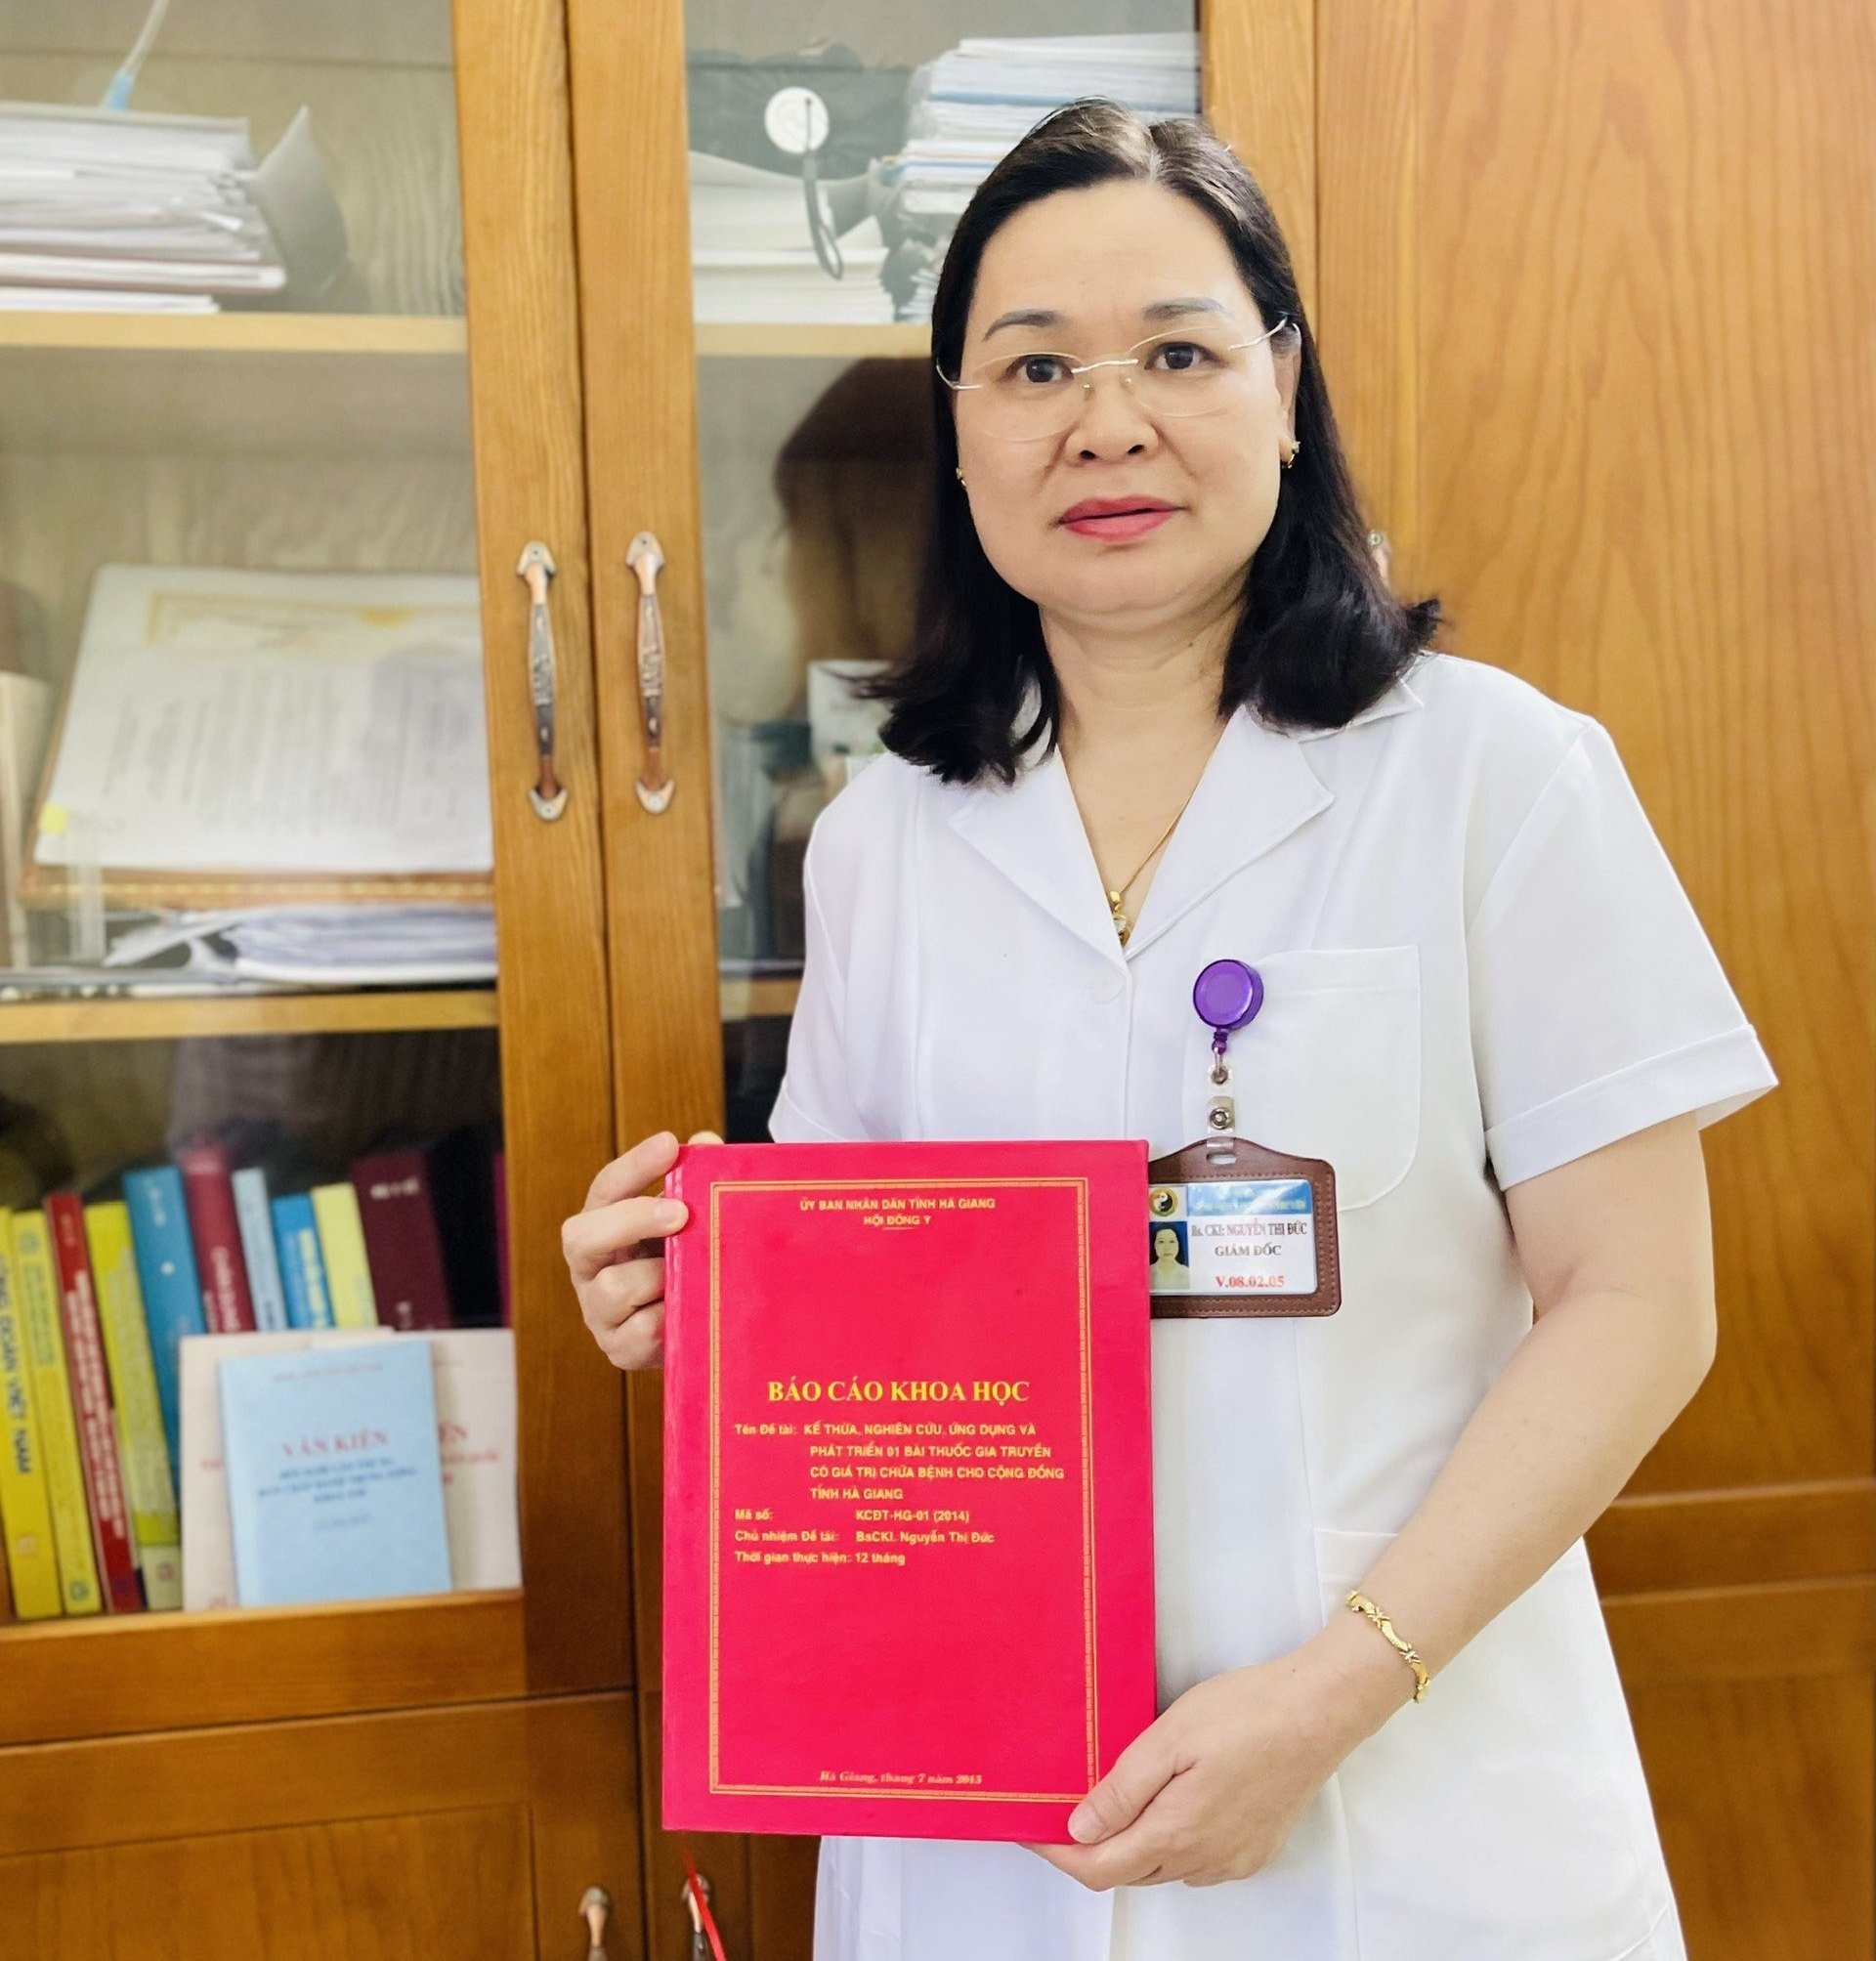 Đại tràng HG được Sở Khoa học và Công nghệ Hà Giang công nhận là Đề tài khoa học cấp tỉnh năm 2015.